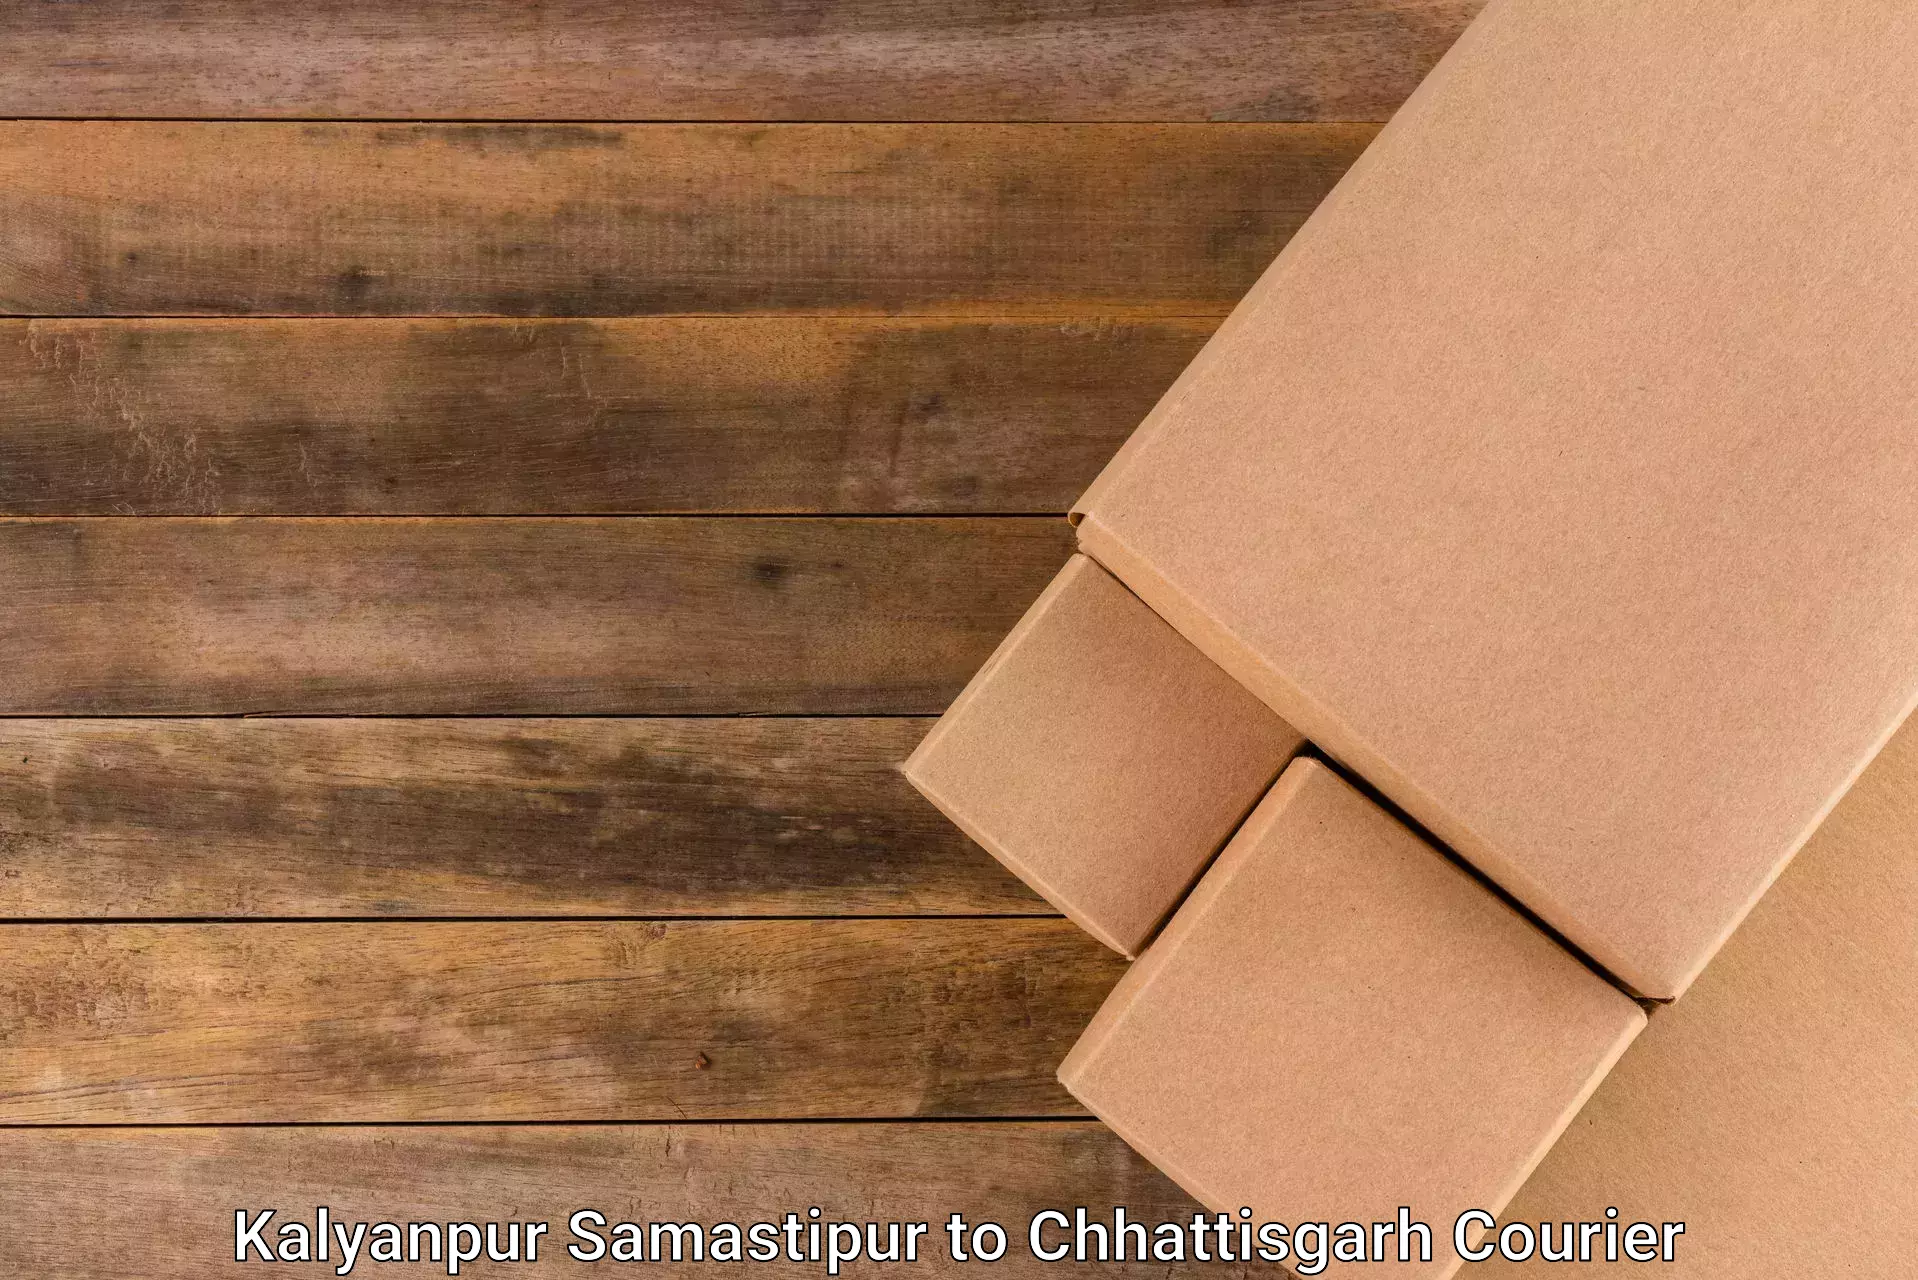 High value parcel delivery Kalyanpur Samastipur to Jagdalpur